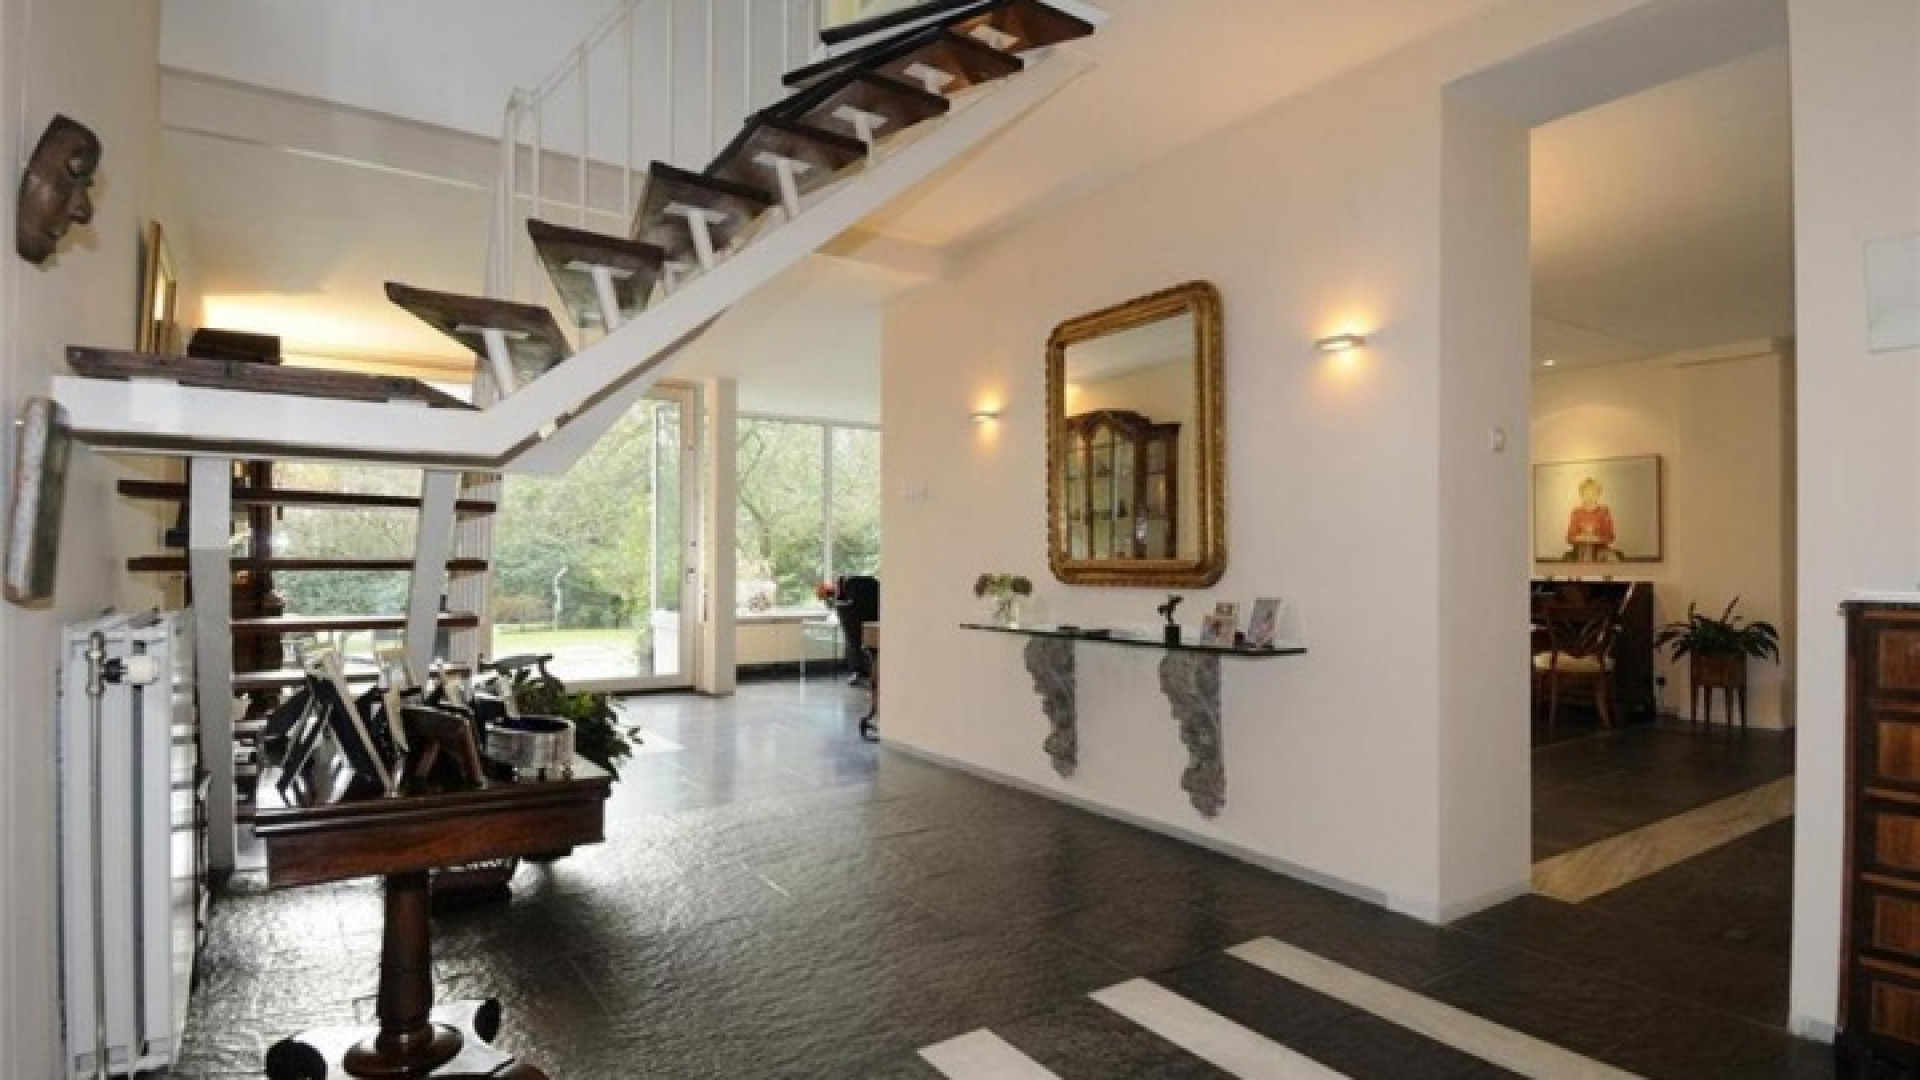 Totale prijsverlaging van half miljoen euro moet koper lokken voor villa Neelie Smit Kroes. Zie foto's! 6